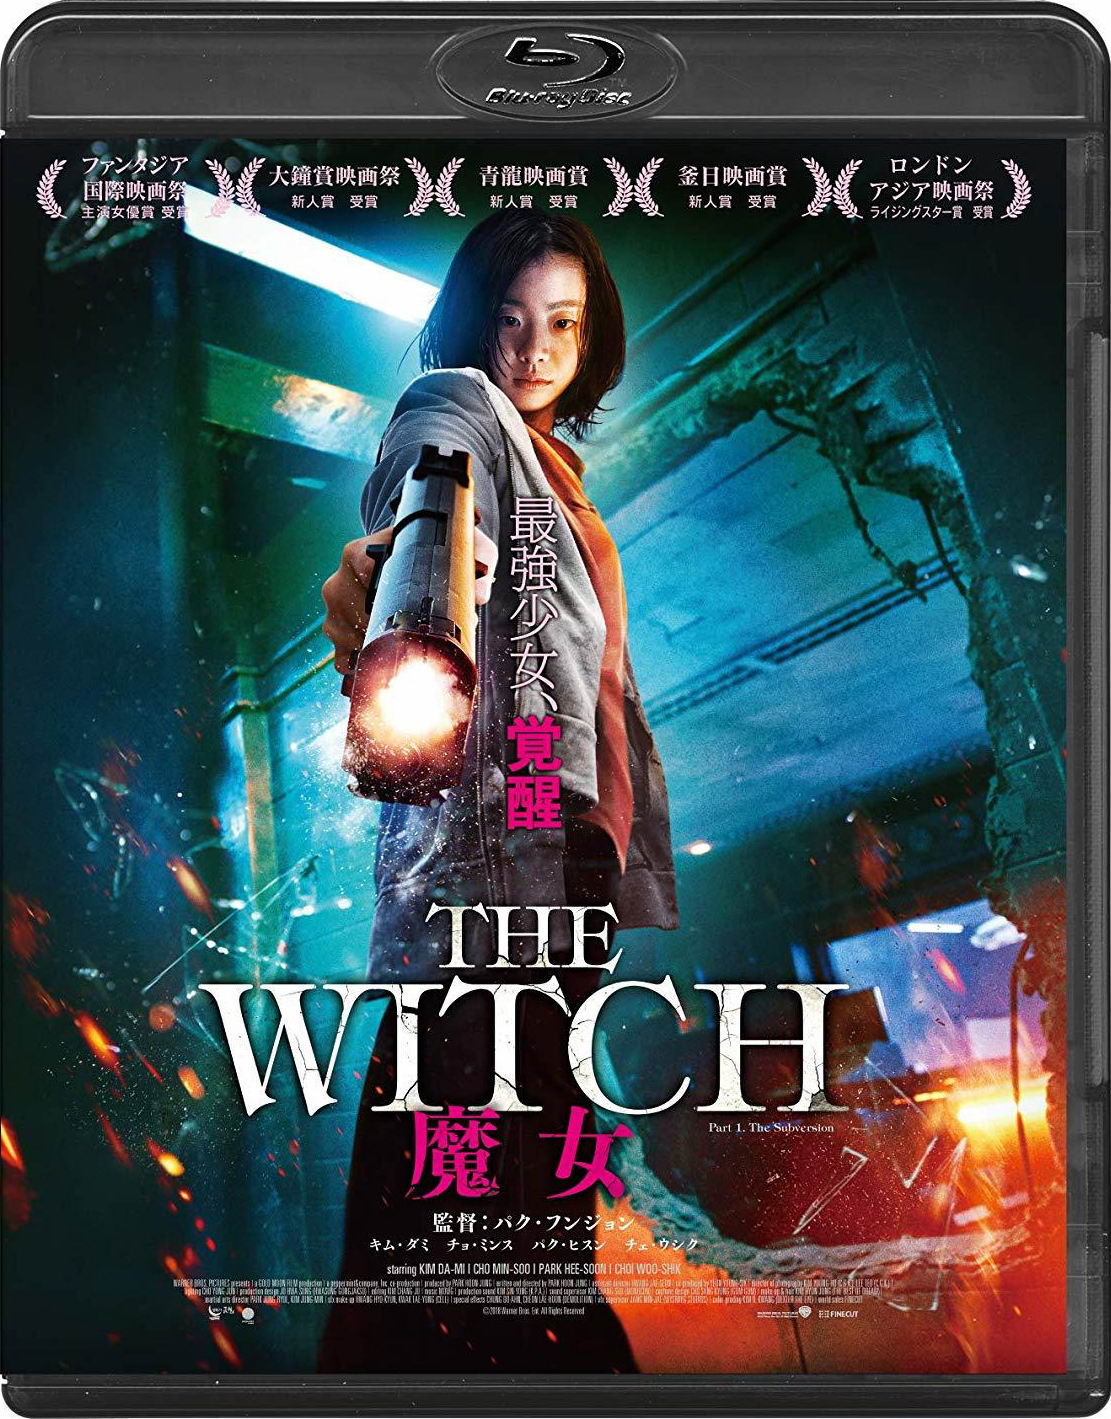 [魔女].The.Witch.Part.1.The.Subversion.2018.BluRay.1080p.AVC.DTS-HD.MA.5.1-DiY@HDHome     39.5G-2.jpg